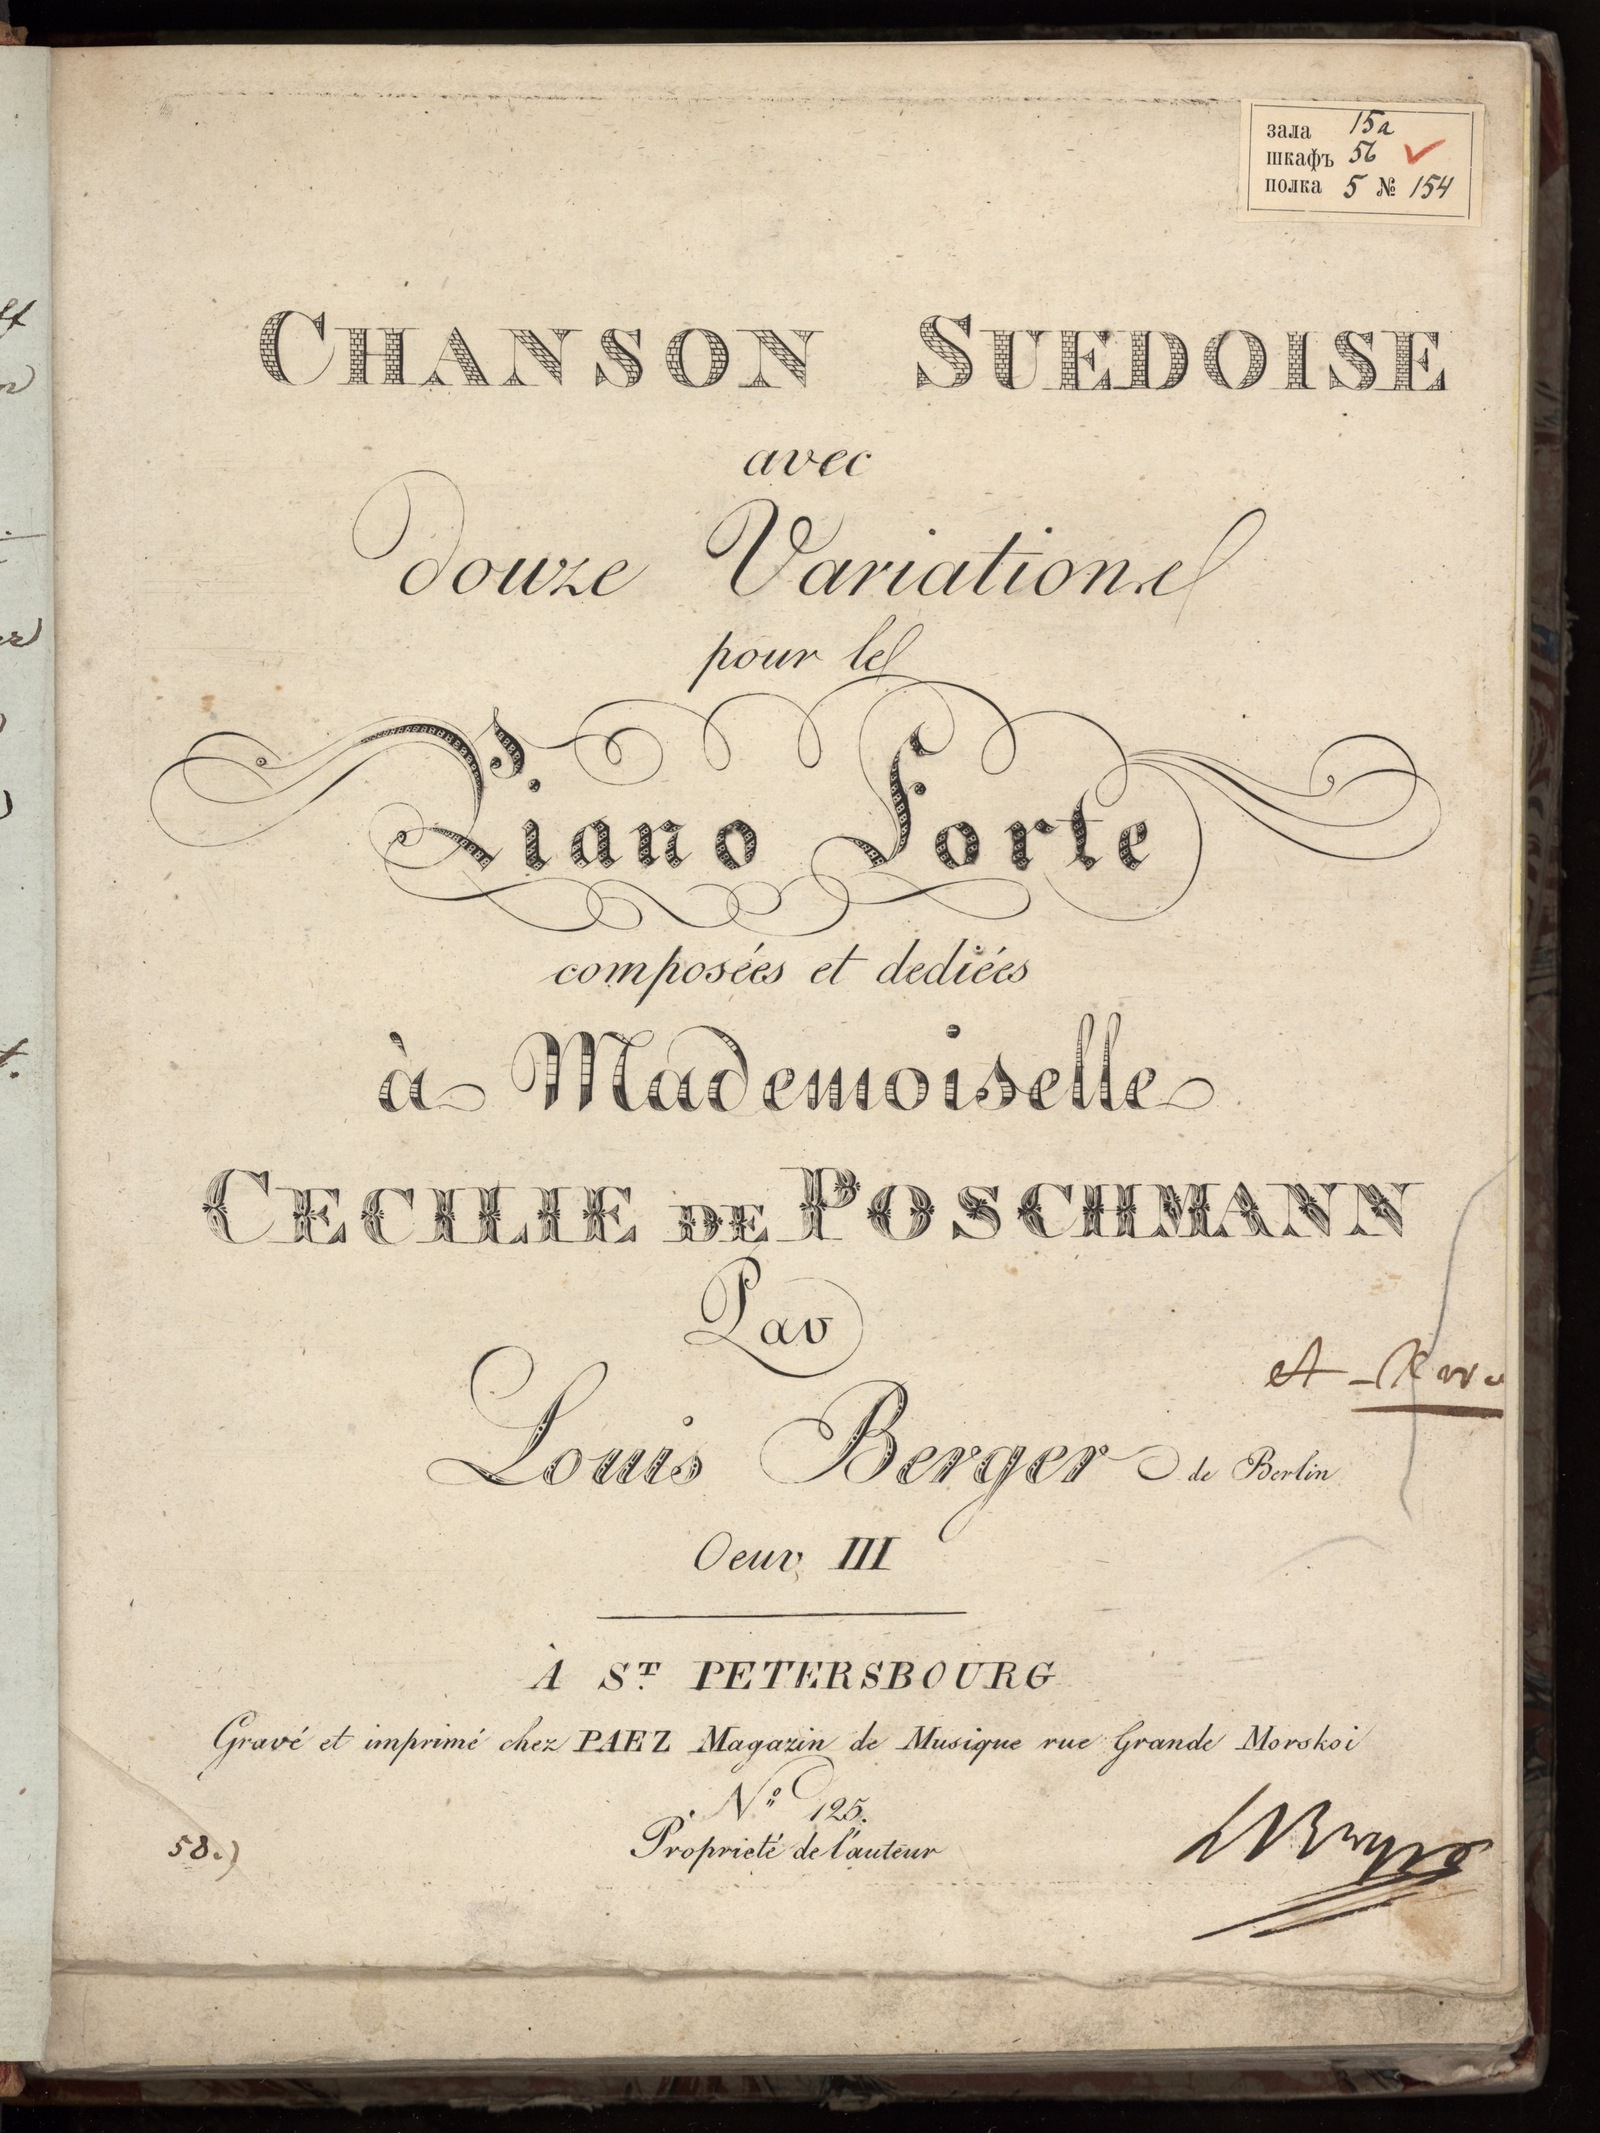 Изображение книги Chanson suedoise avec douze variations pour le piano forte